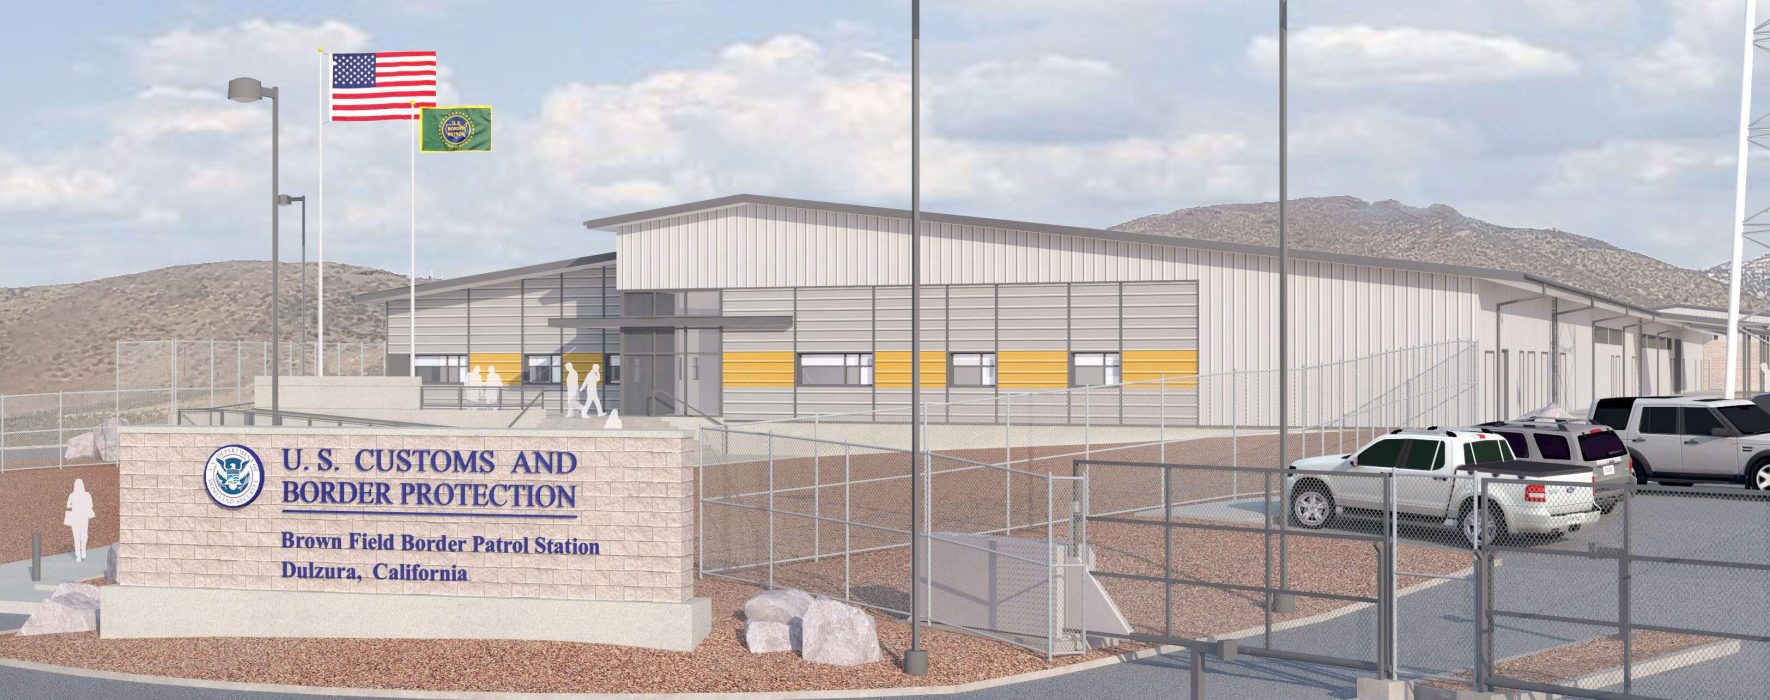 Brown Field Border Patrol Station rendering